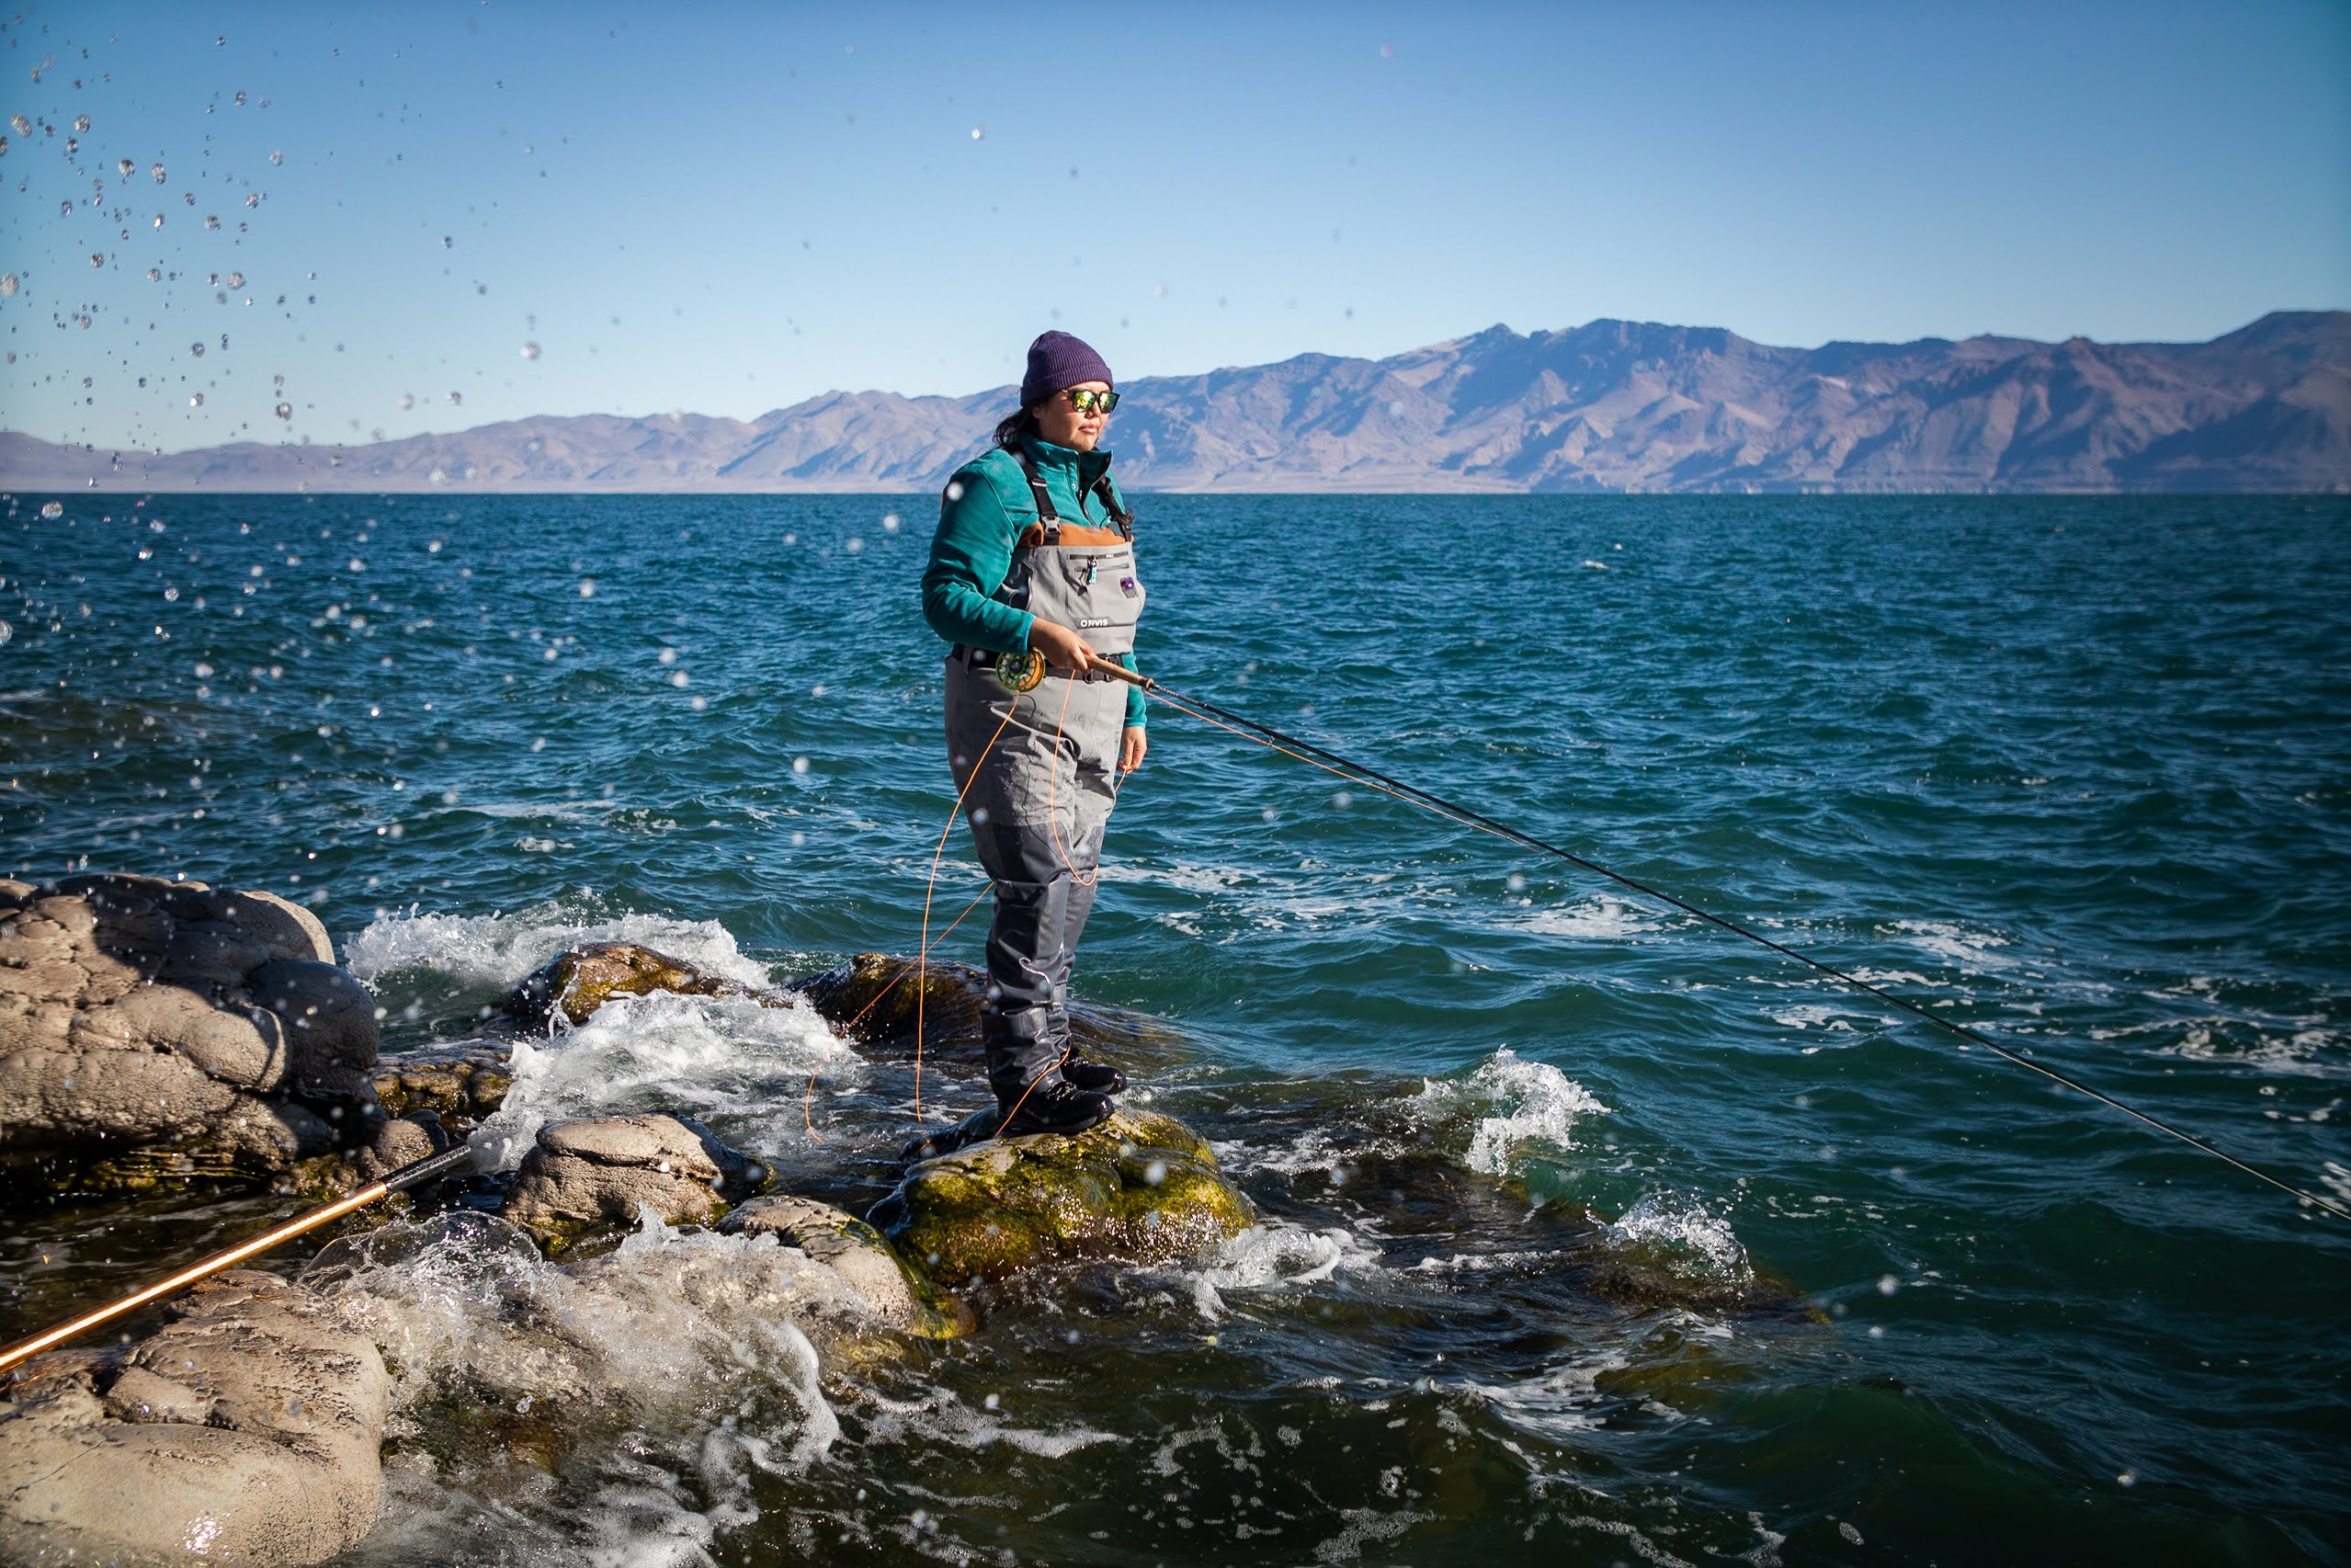 First Paiute woman fly fishing guide at Pyramid Lake hopes to